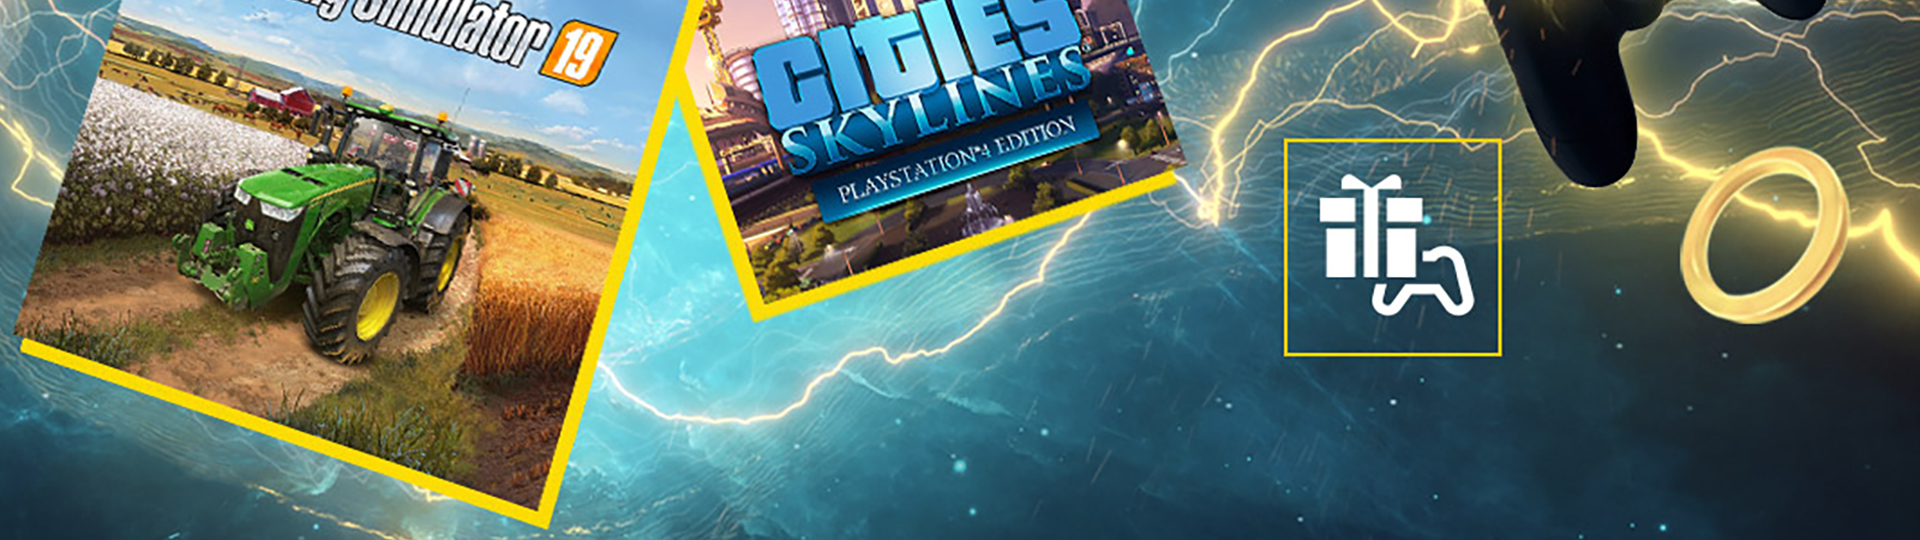 Cities: Skylines a Farming Simulator 19 jsou v květnu zdarma pro PS Plus předplatitele | Novinky